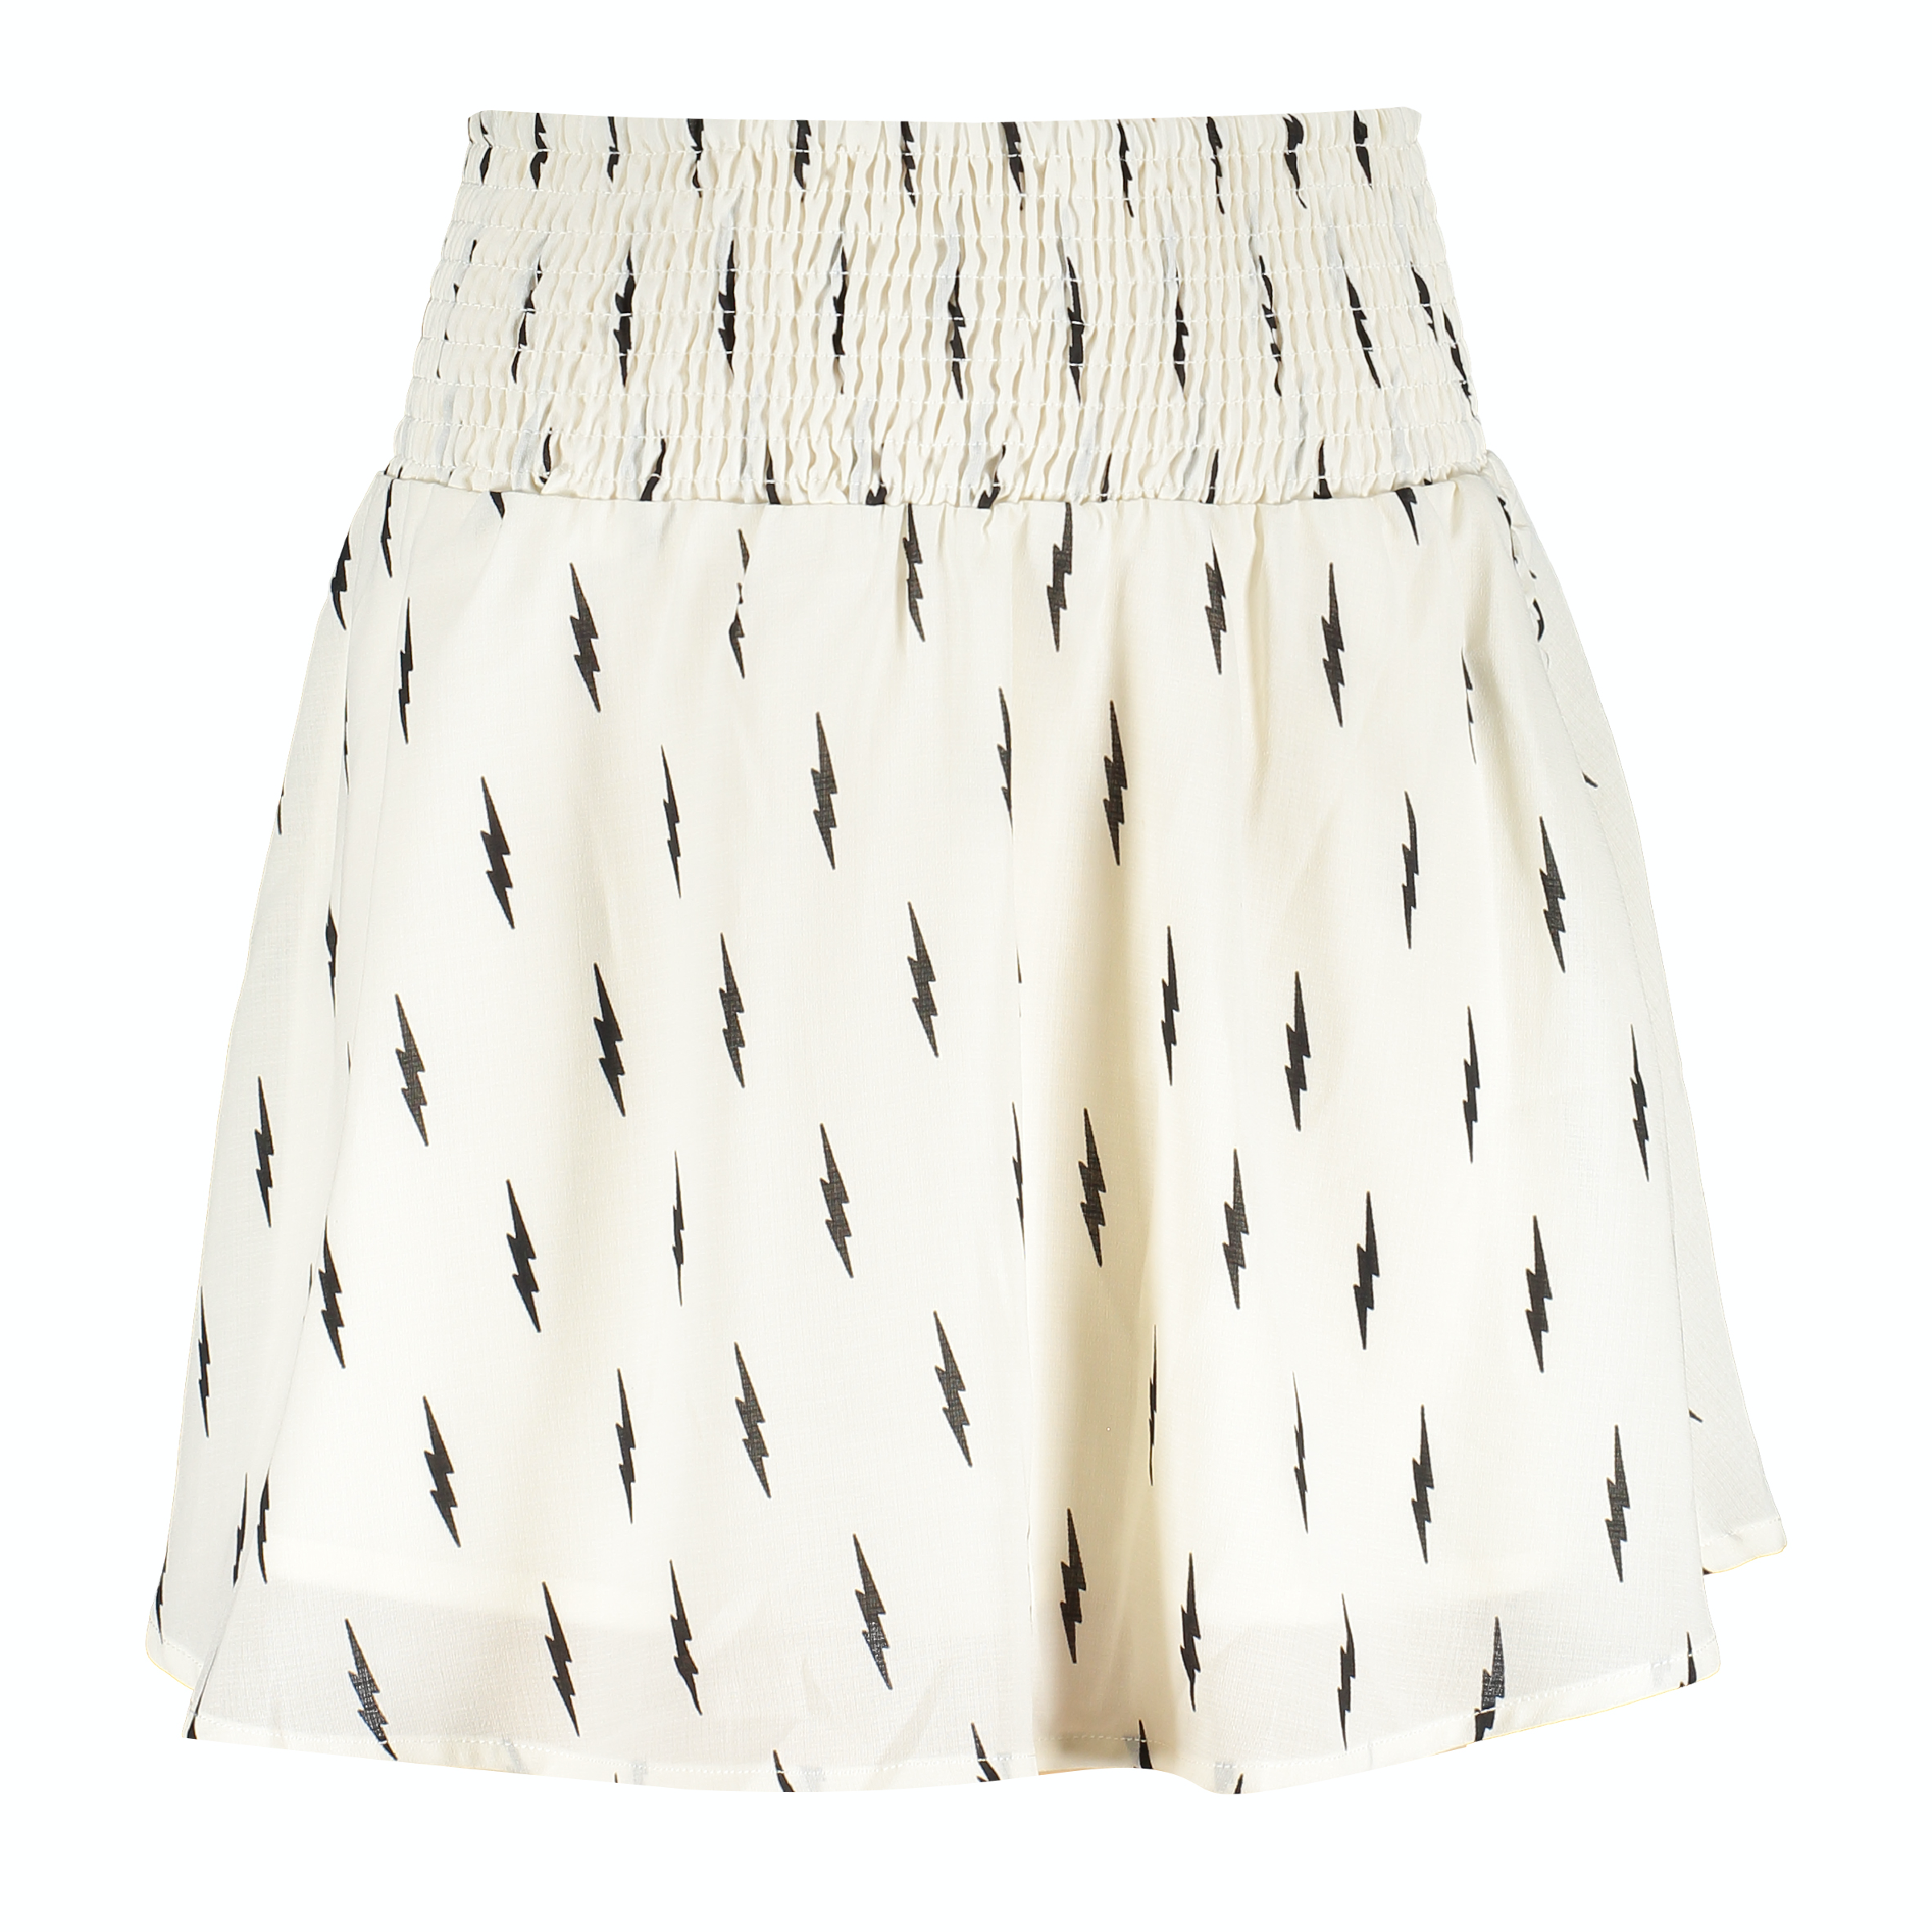 Meisjes Ninte Skirt van Frankie & Lib in de kleur Off White W/ Lightning Print in maat 176.